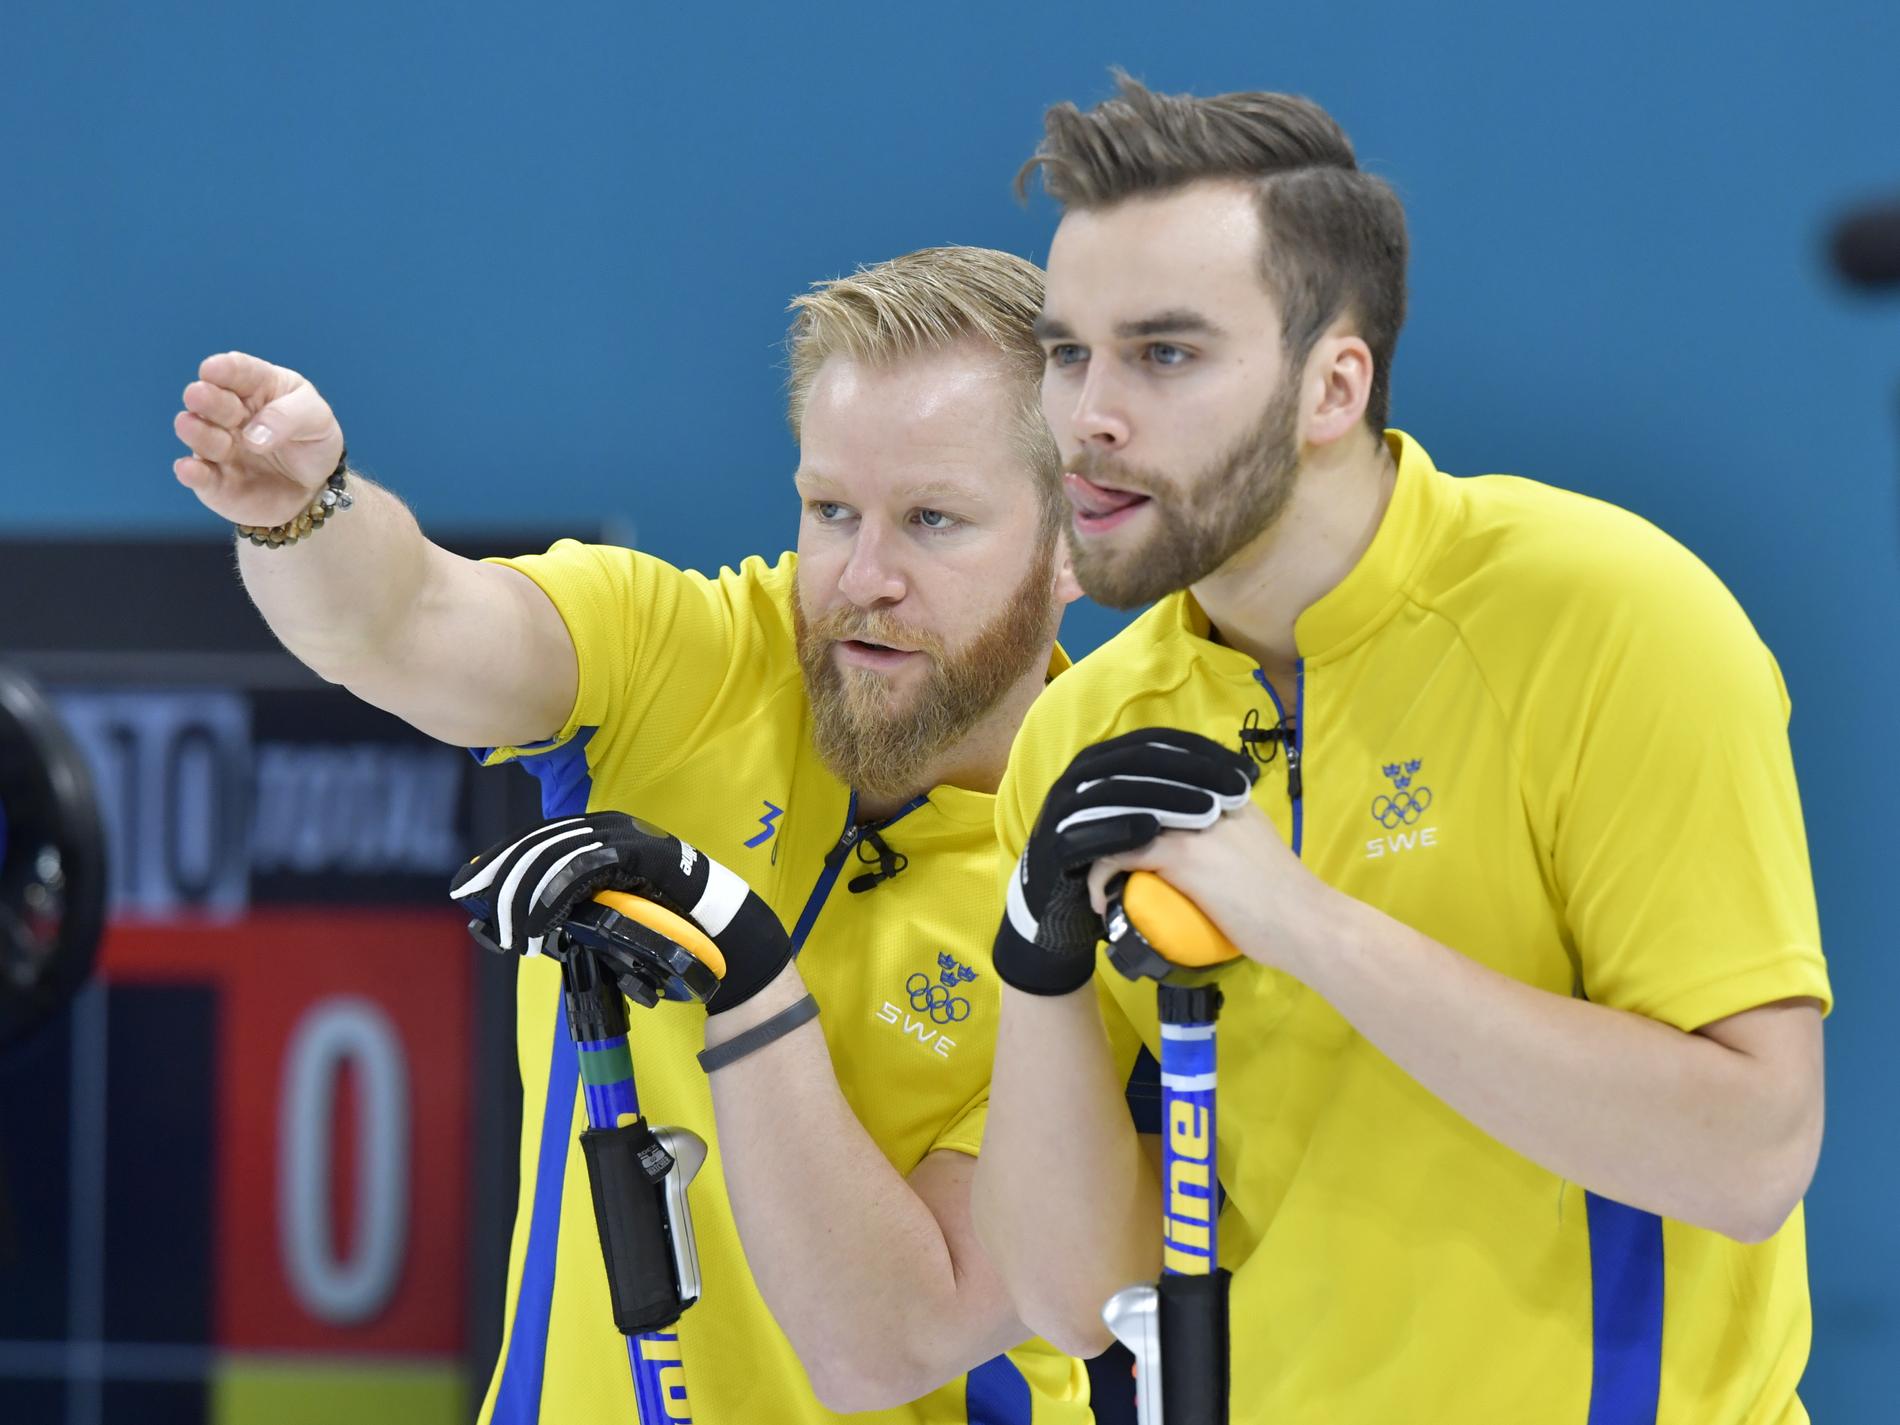 Sveriges Niklas Edin och Rasmus Wranå tog en skön seger mot USA i Curling World Cup. Arkivbild.